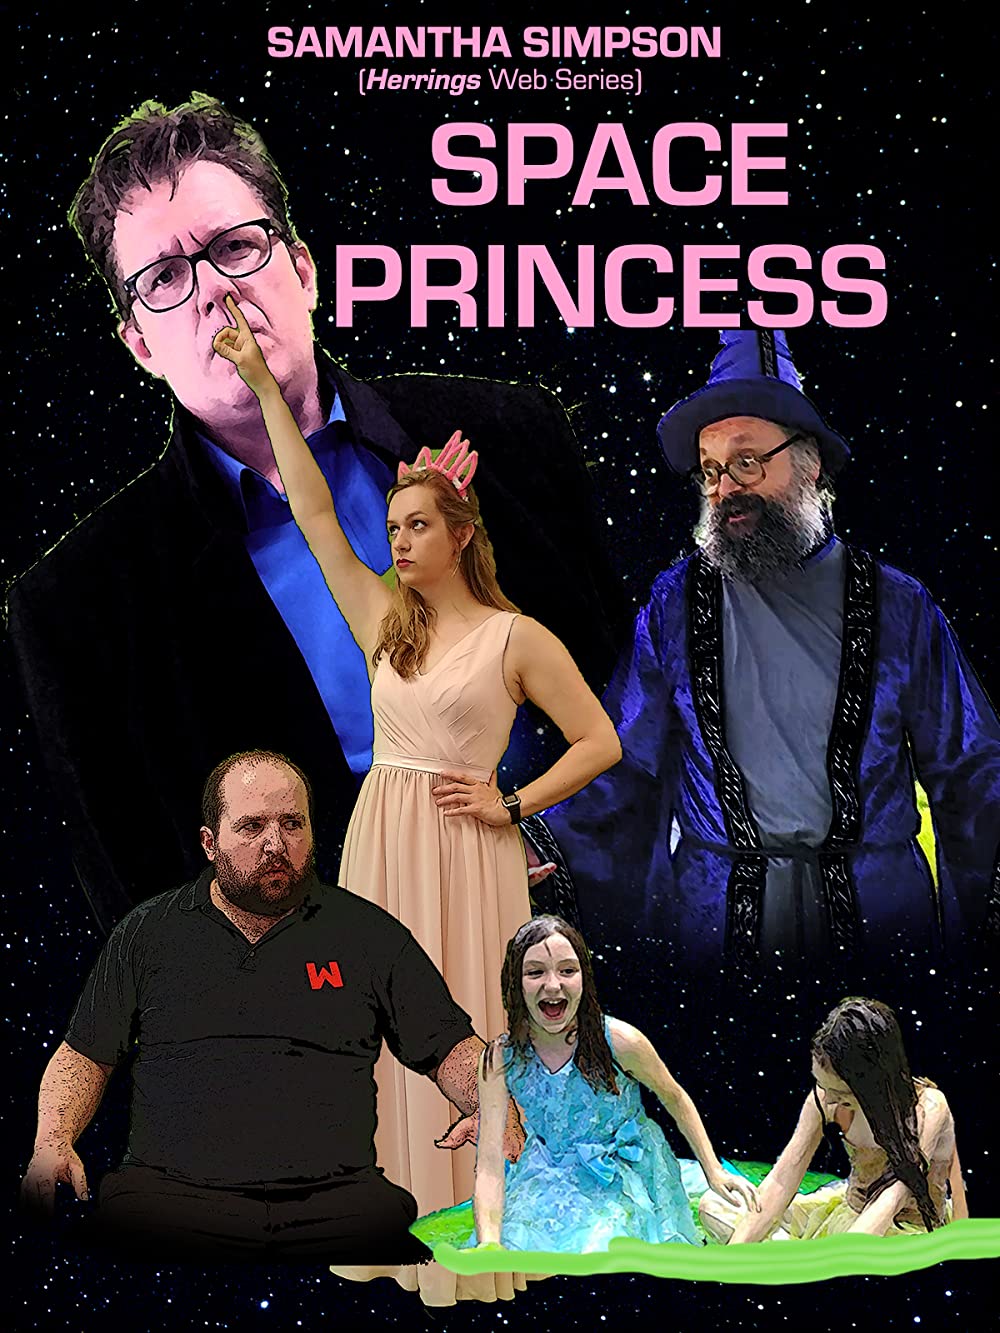 Принцесса из космоса (2019)